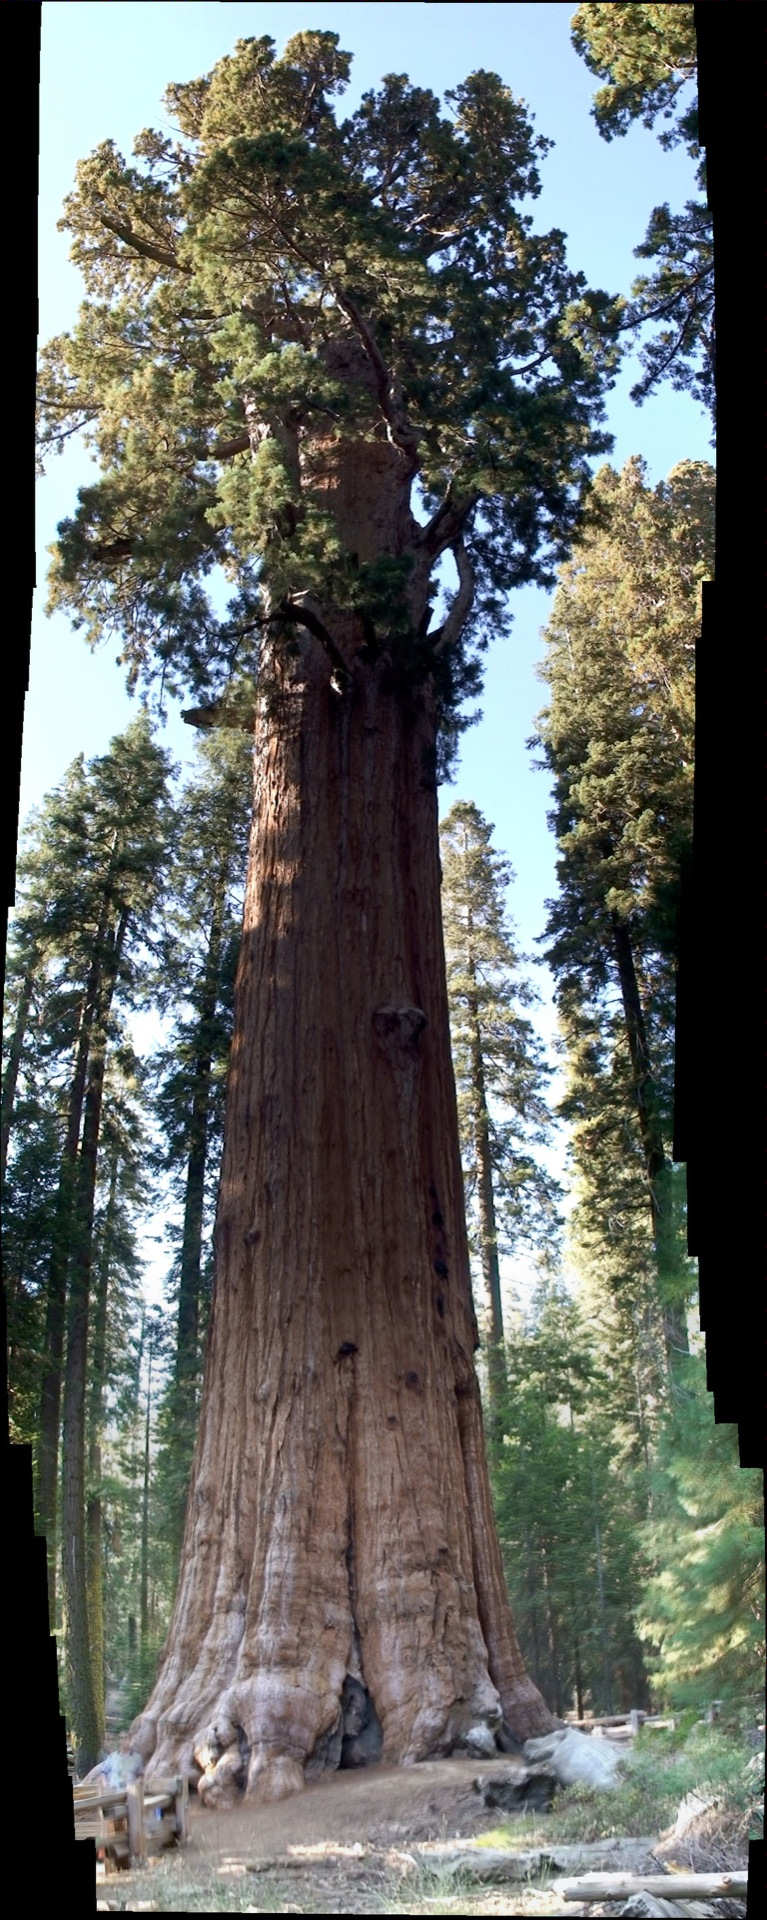 Sequoia National Park, bienvenue aux pays des gÃ©ants